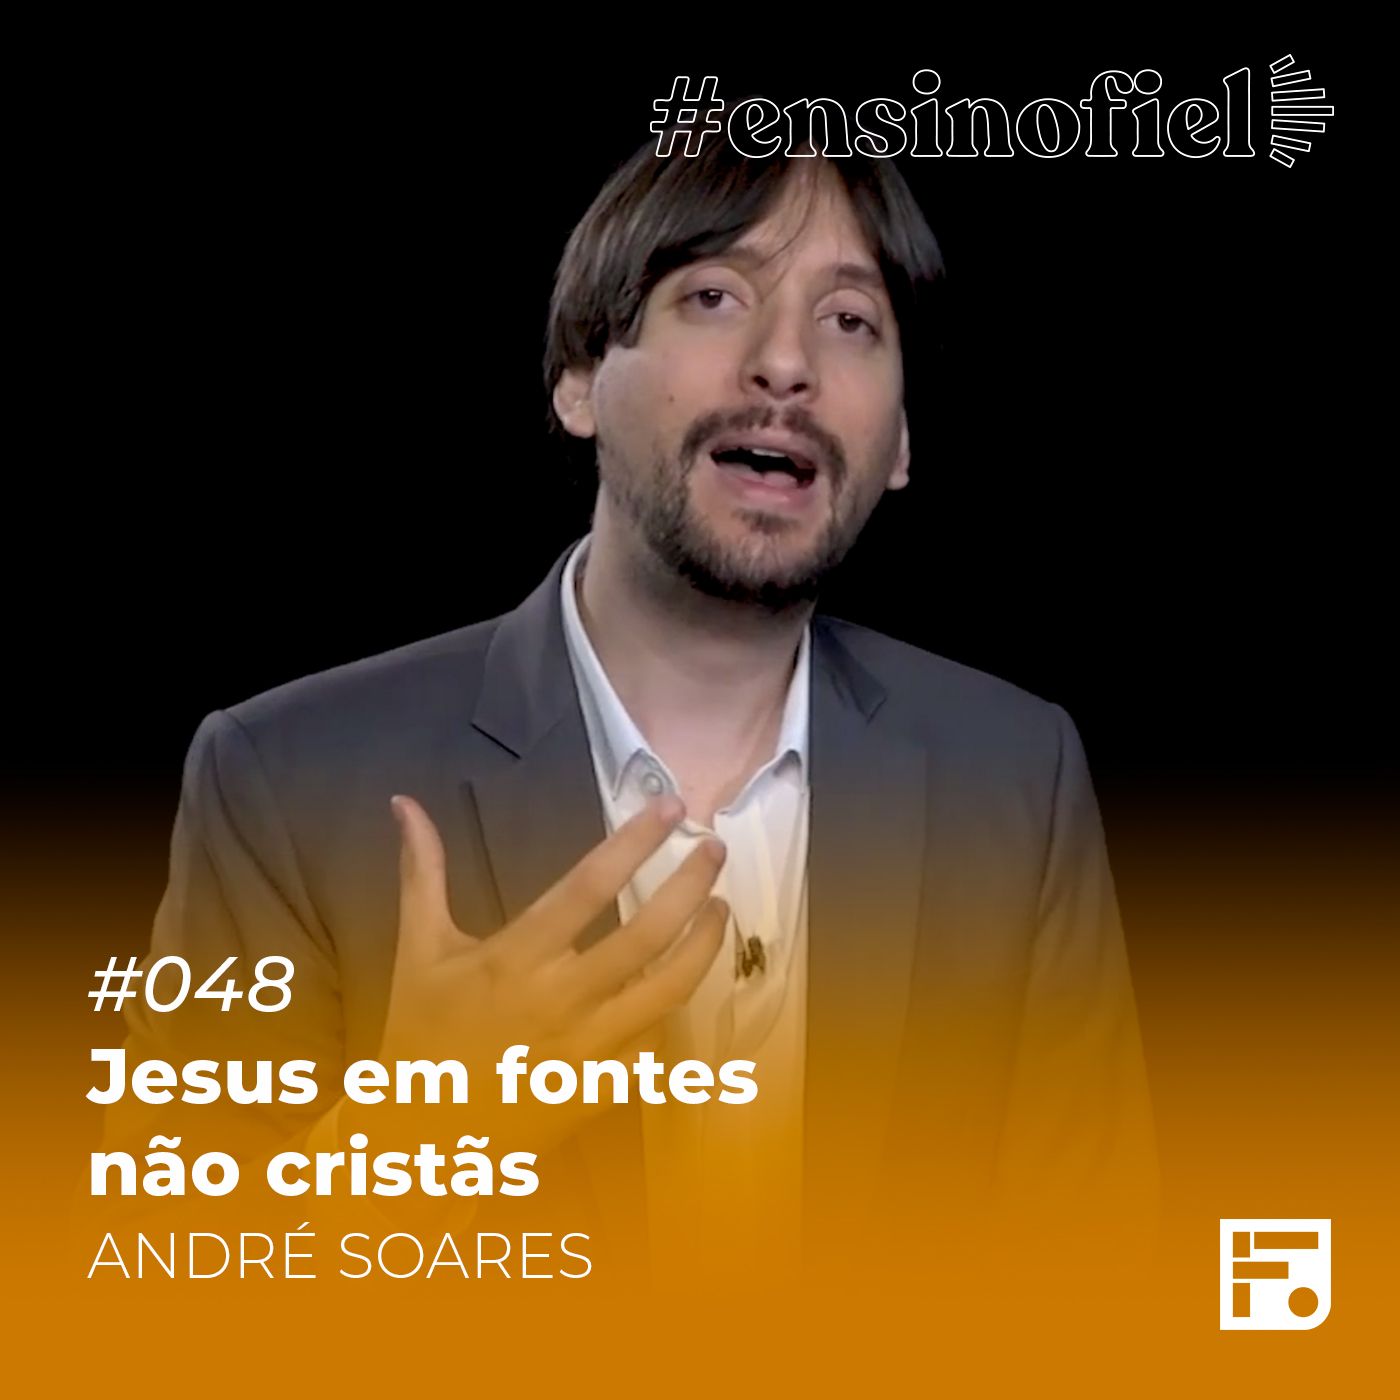 Jesus em fontes não cristãs - André Soares